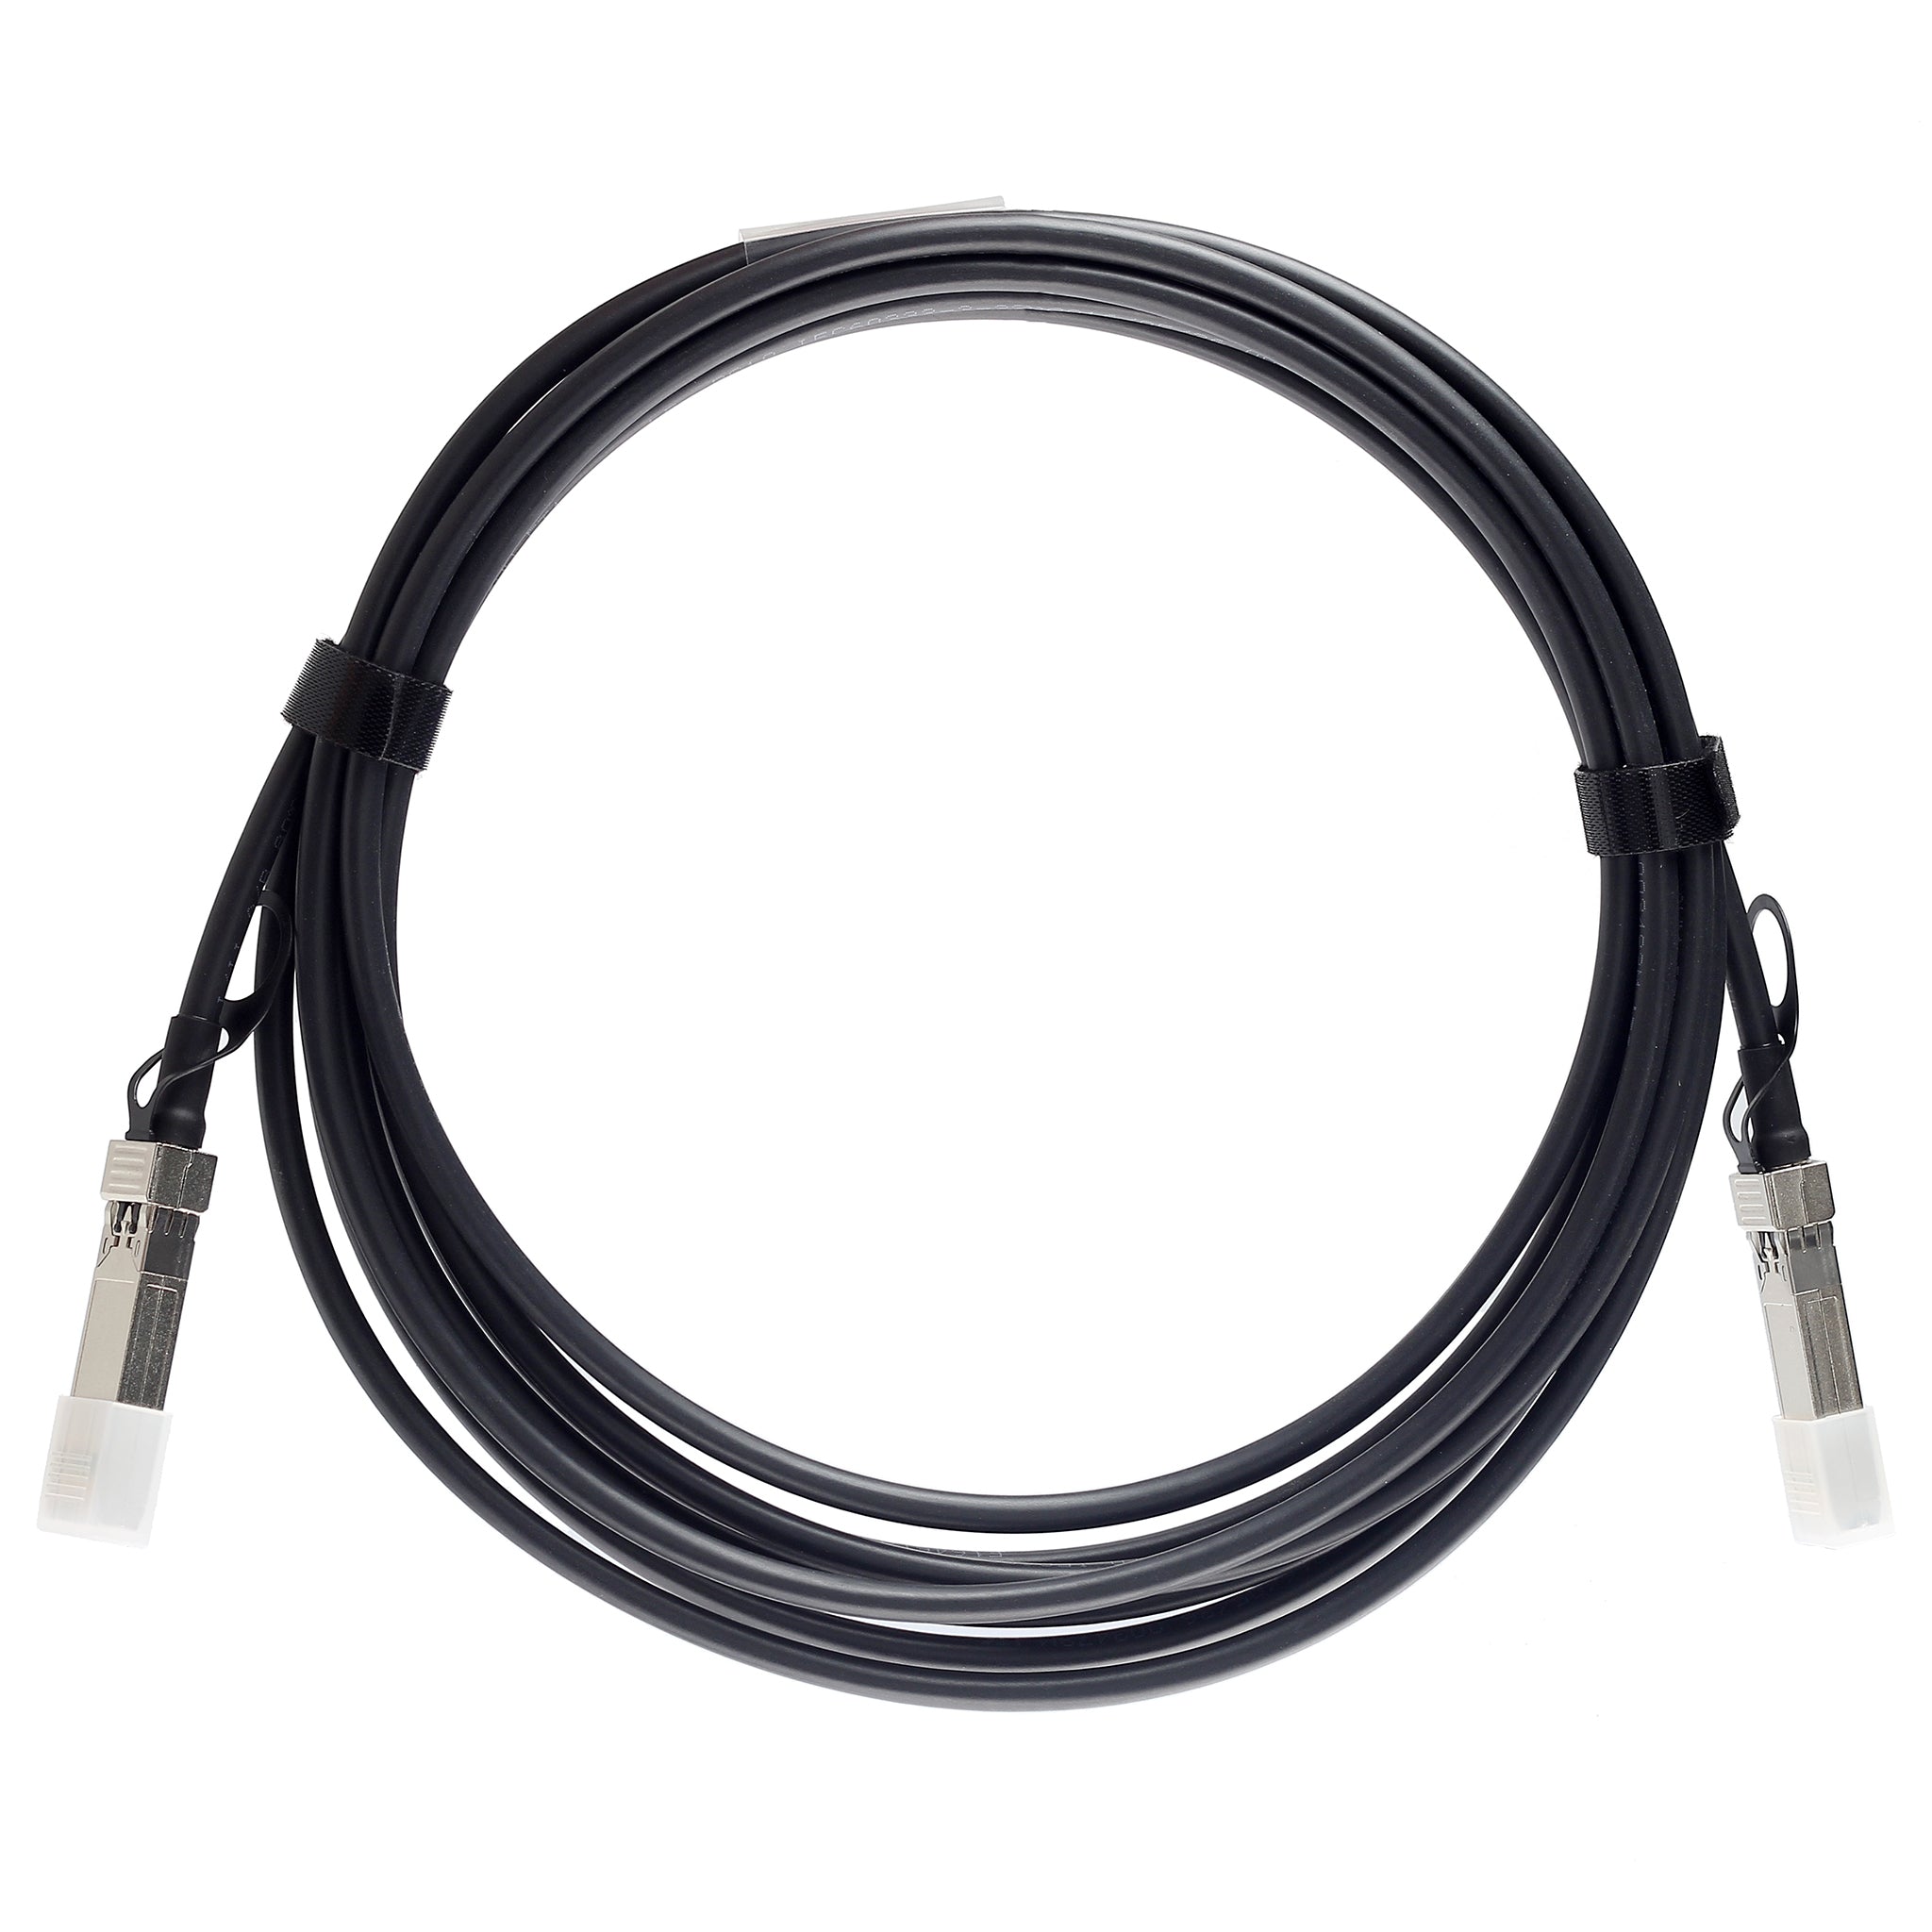 SFP-H25G-CU2M-C - 2m Cisco Compatible 25G SFP28 Passive Direct Attach Copper Twinax Cable